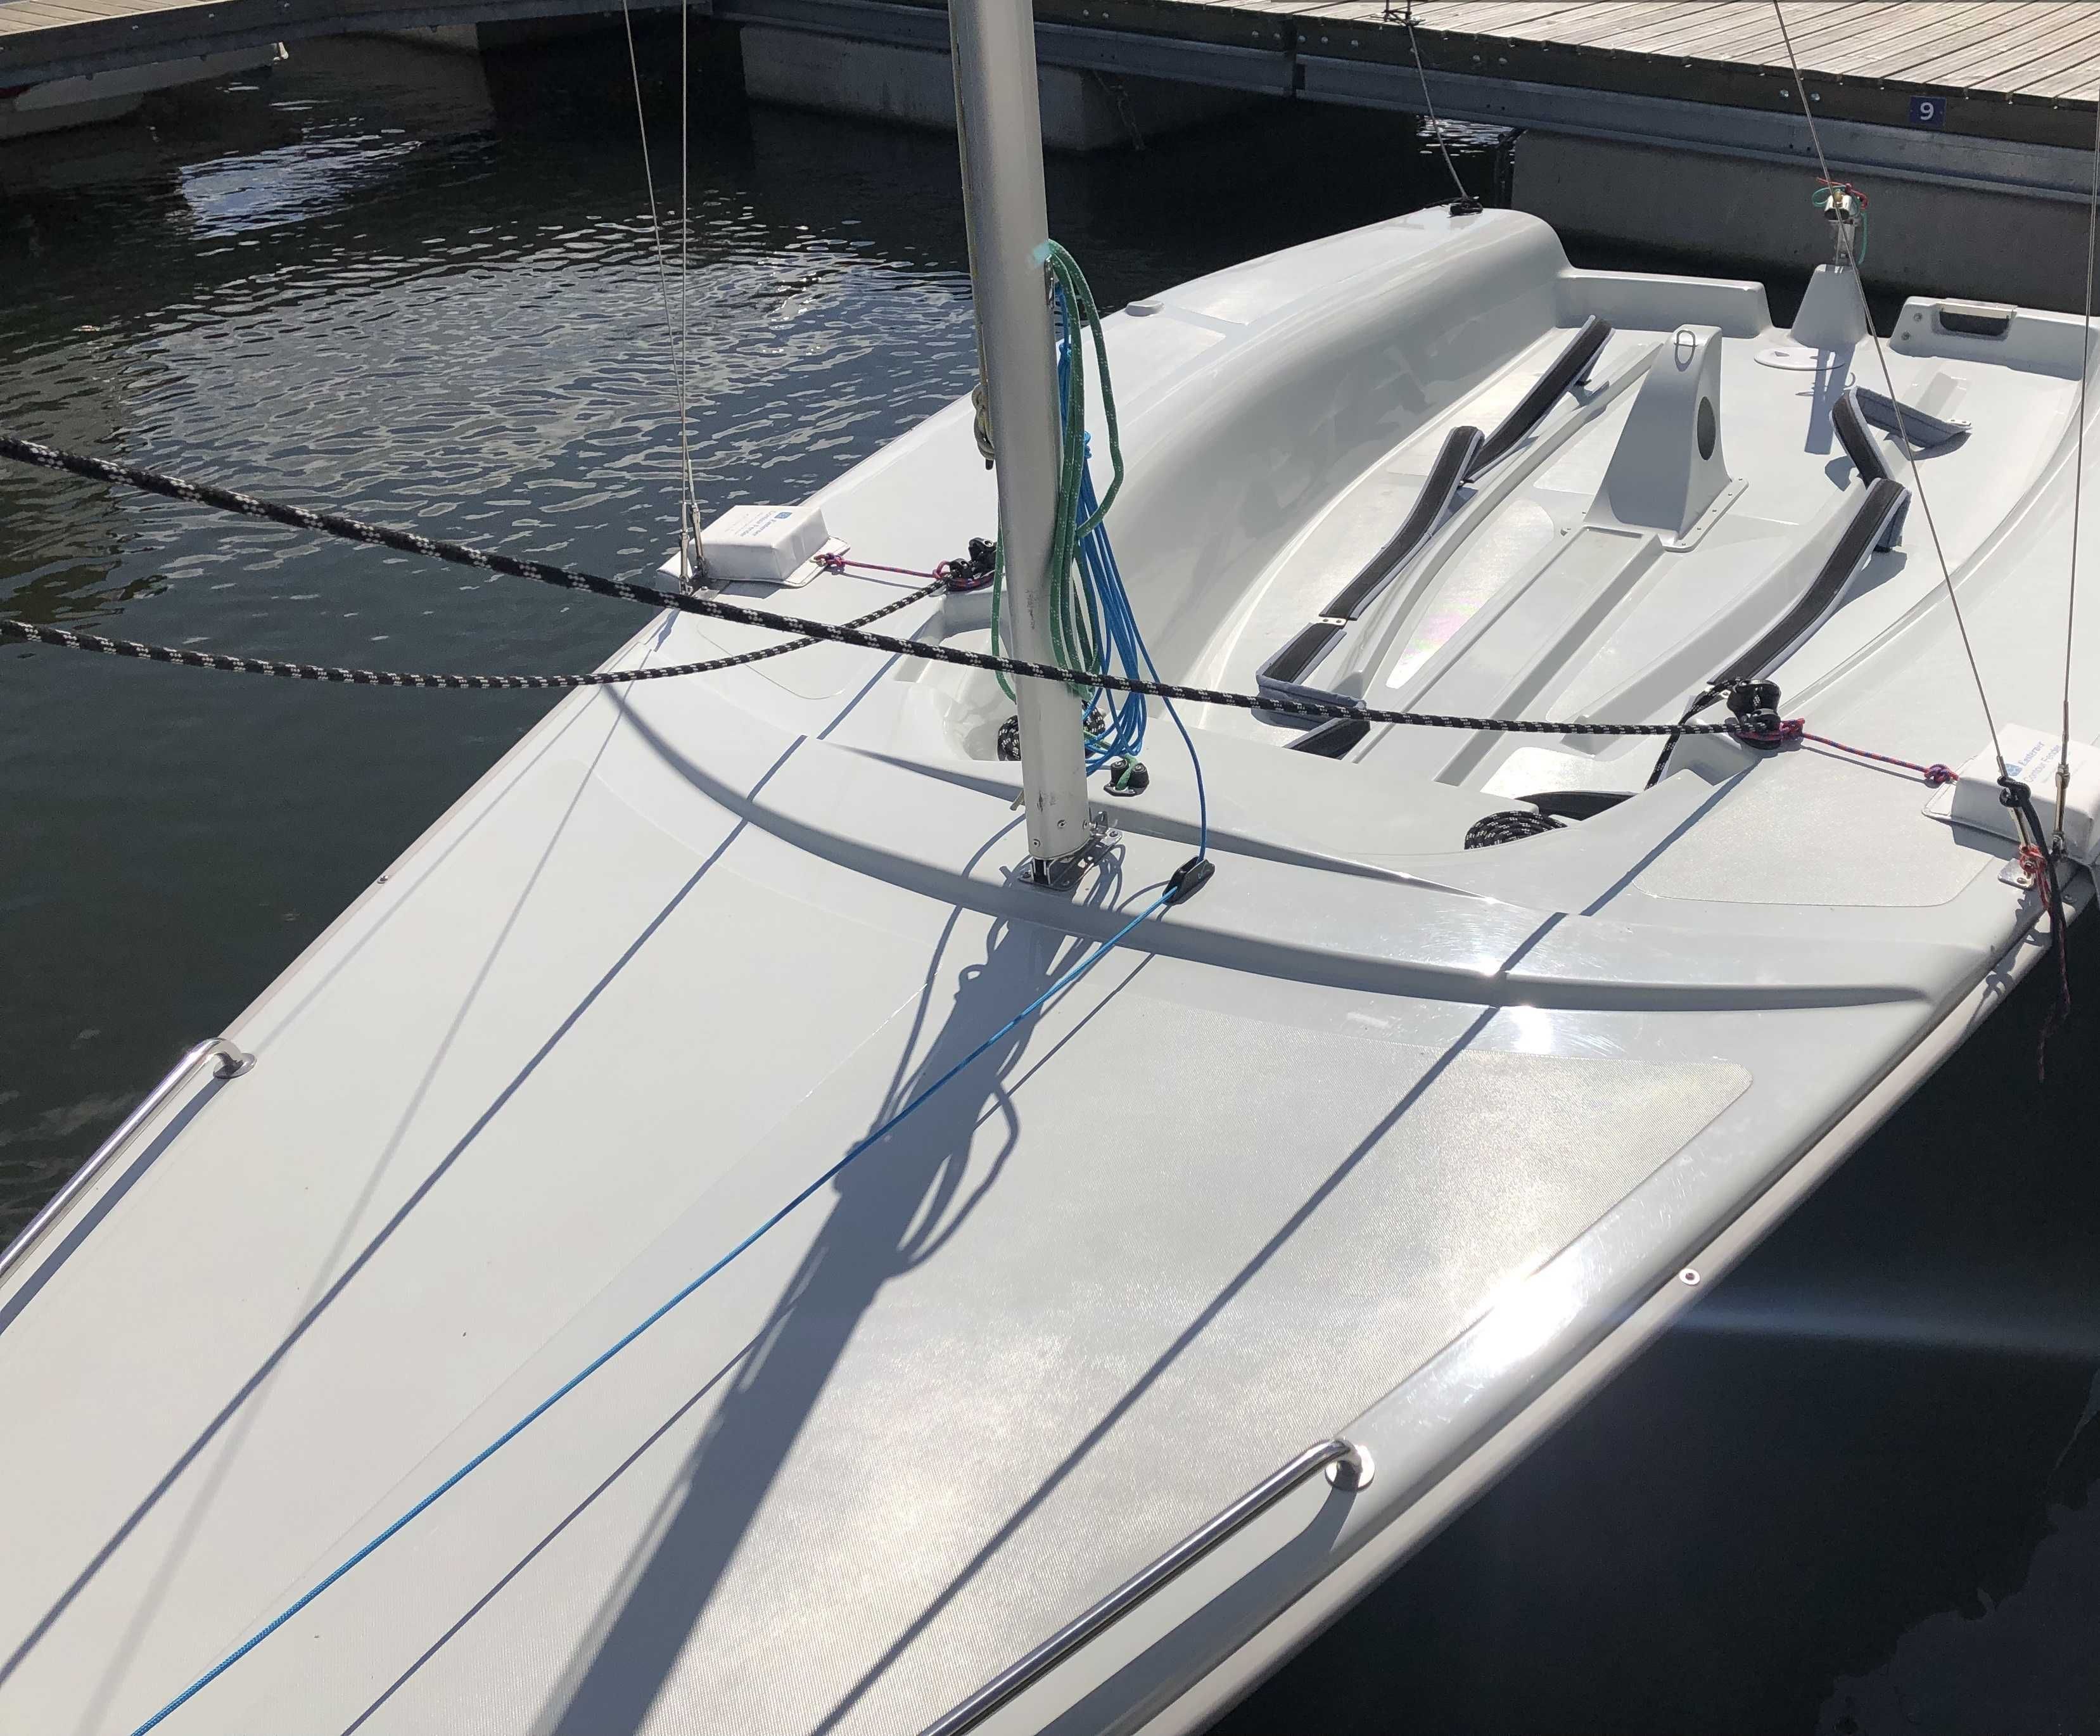 Jacht Sigma 600 Club 2021r, żaglówka, łódź